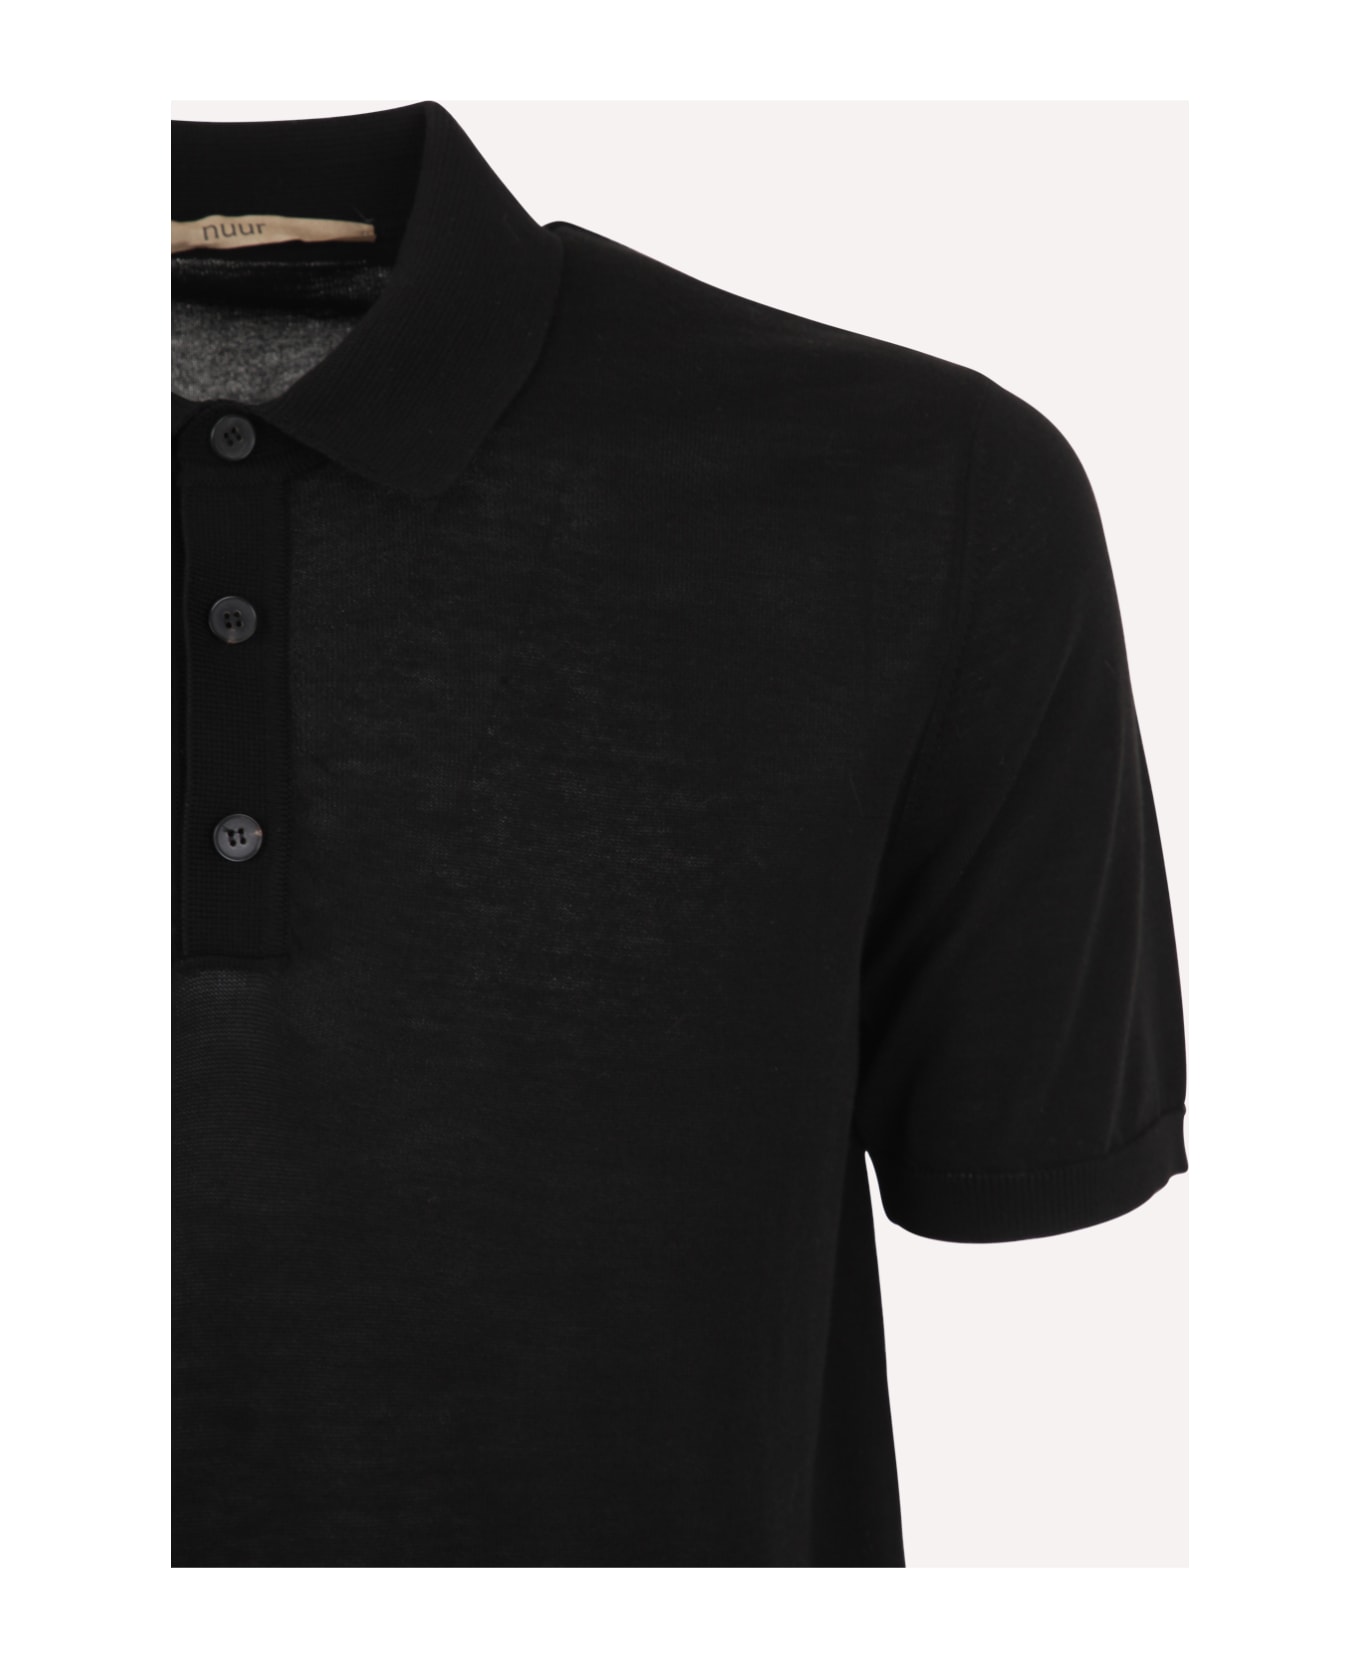 Nuur Short Sleeve Polo - Black